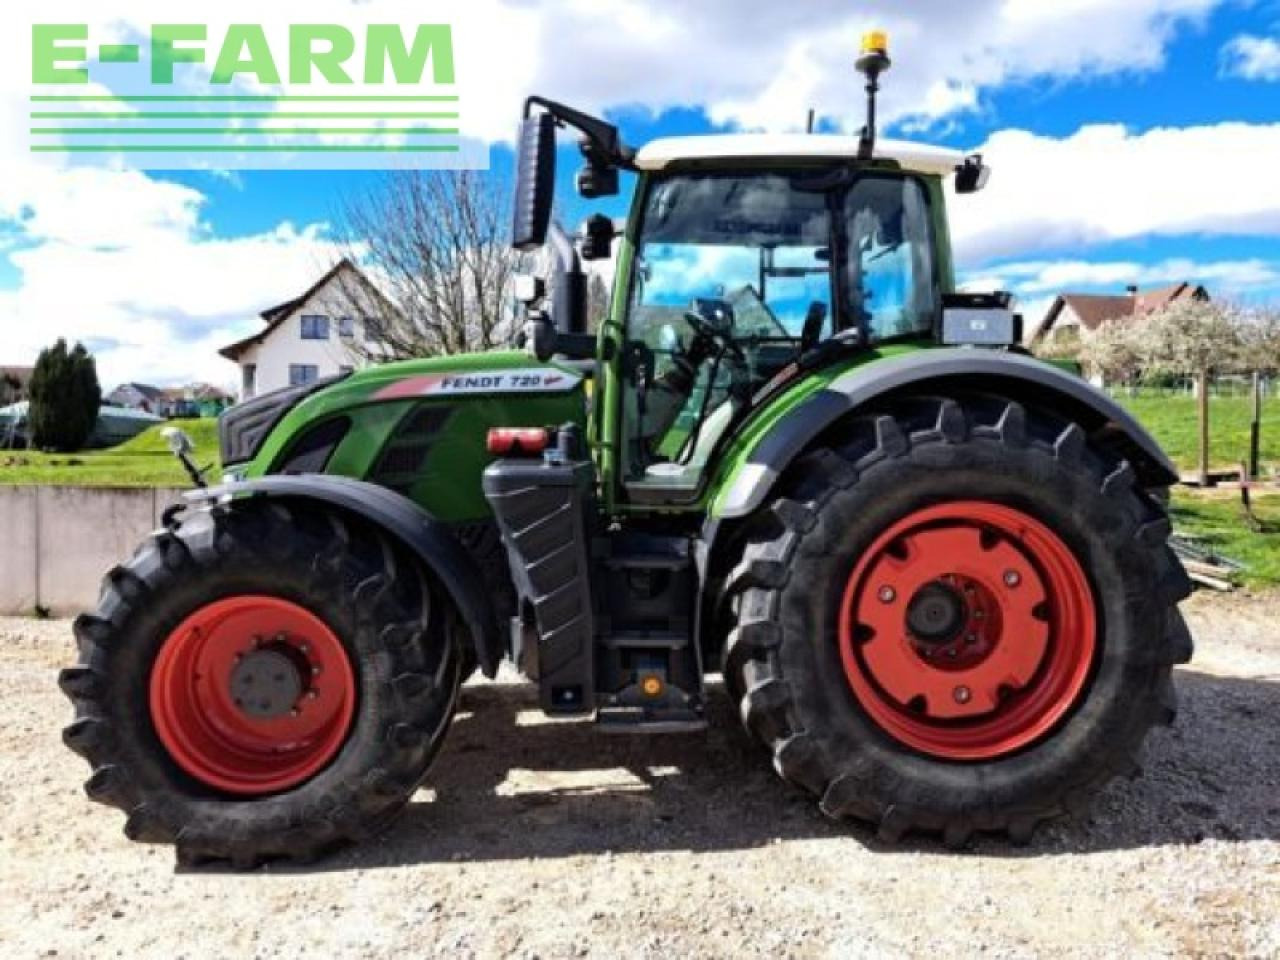 Farm tractor Fendt 720 s4 profi plus: picture 4